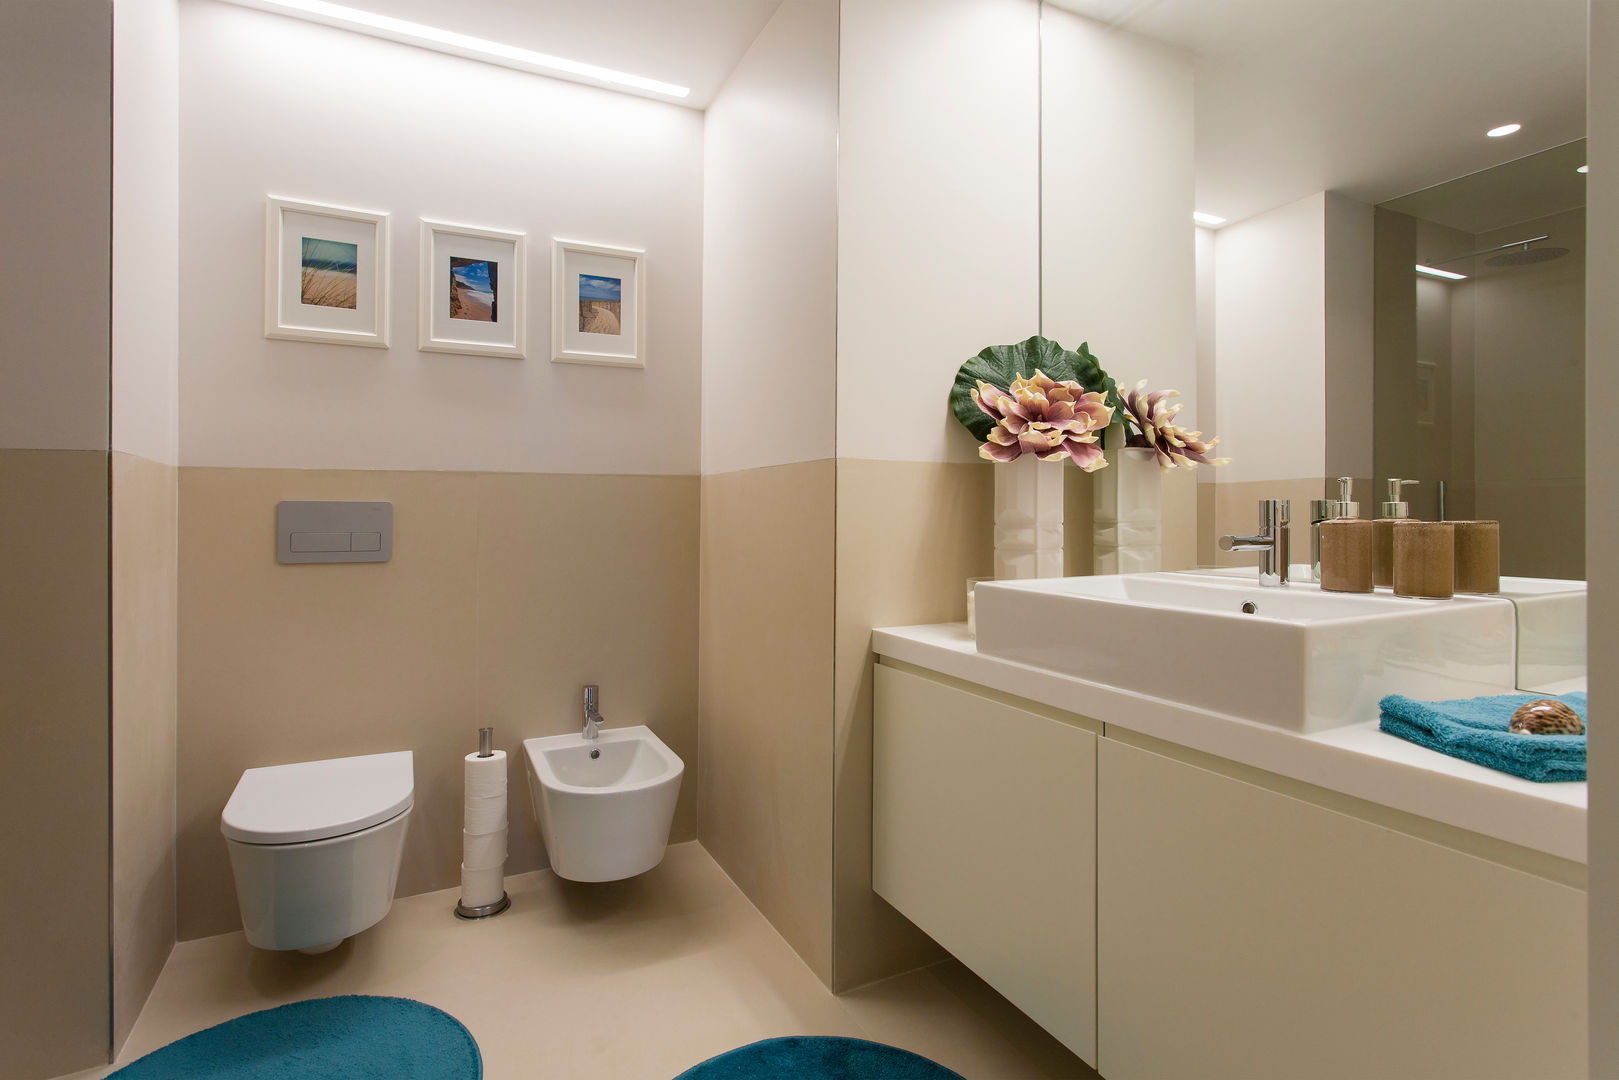 Andar Modelo - Oeiras, Traço Magenta - Design de Interiores Traço Magenta - Design de Interiores Casas de banho modernas